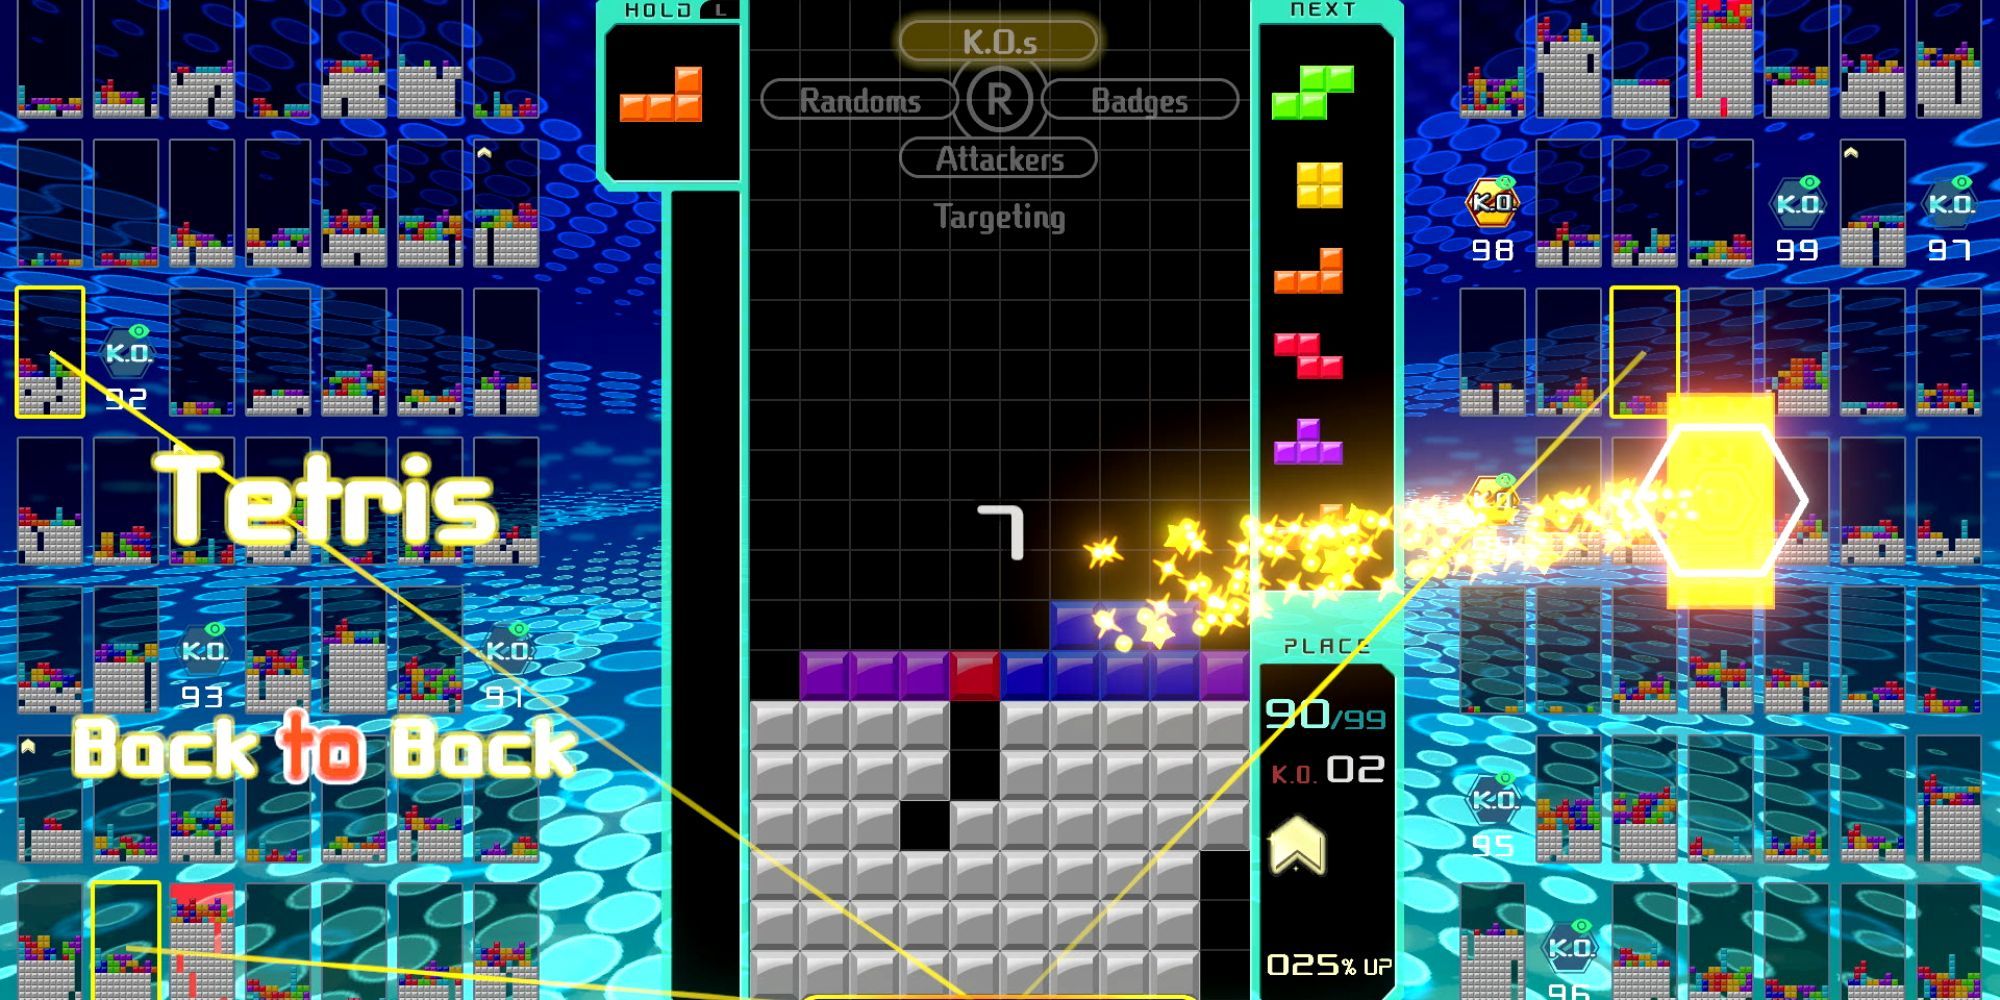 A Tetris 99 match